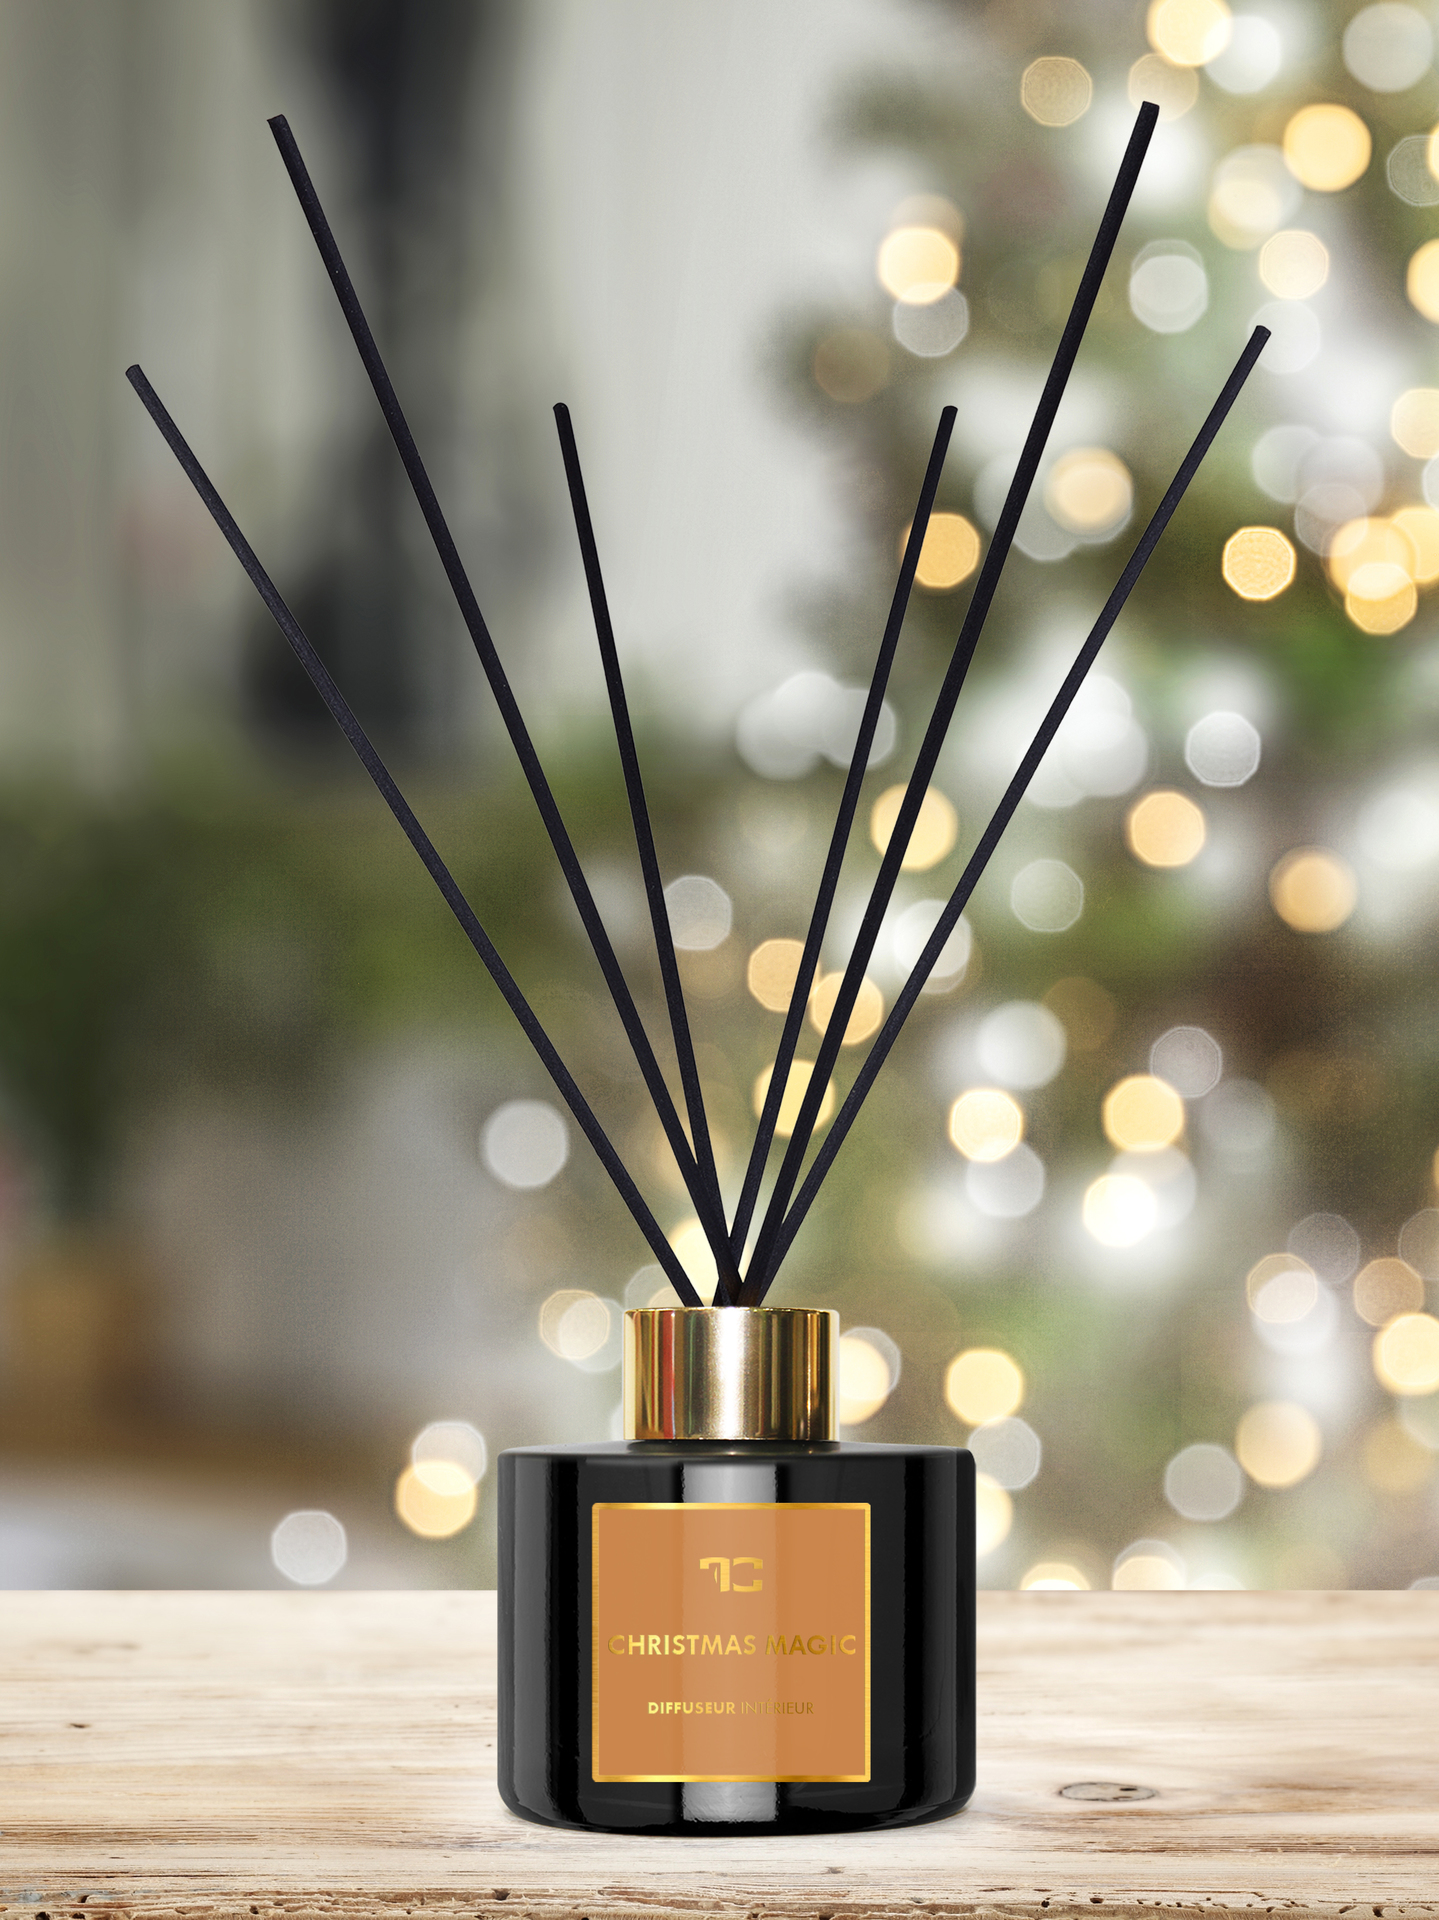 200 ml interiérový tyčinkový bytový parfém, CHRISTMAS MAGIC, DIFFUSEUR INTÉRIEUR